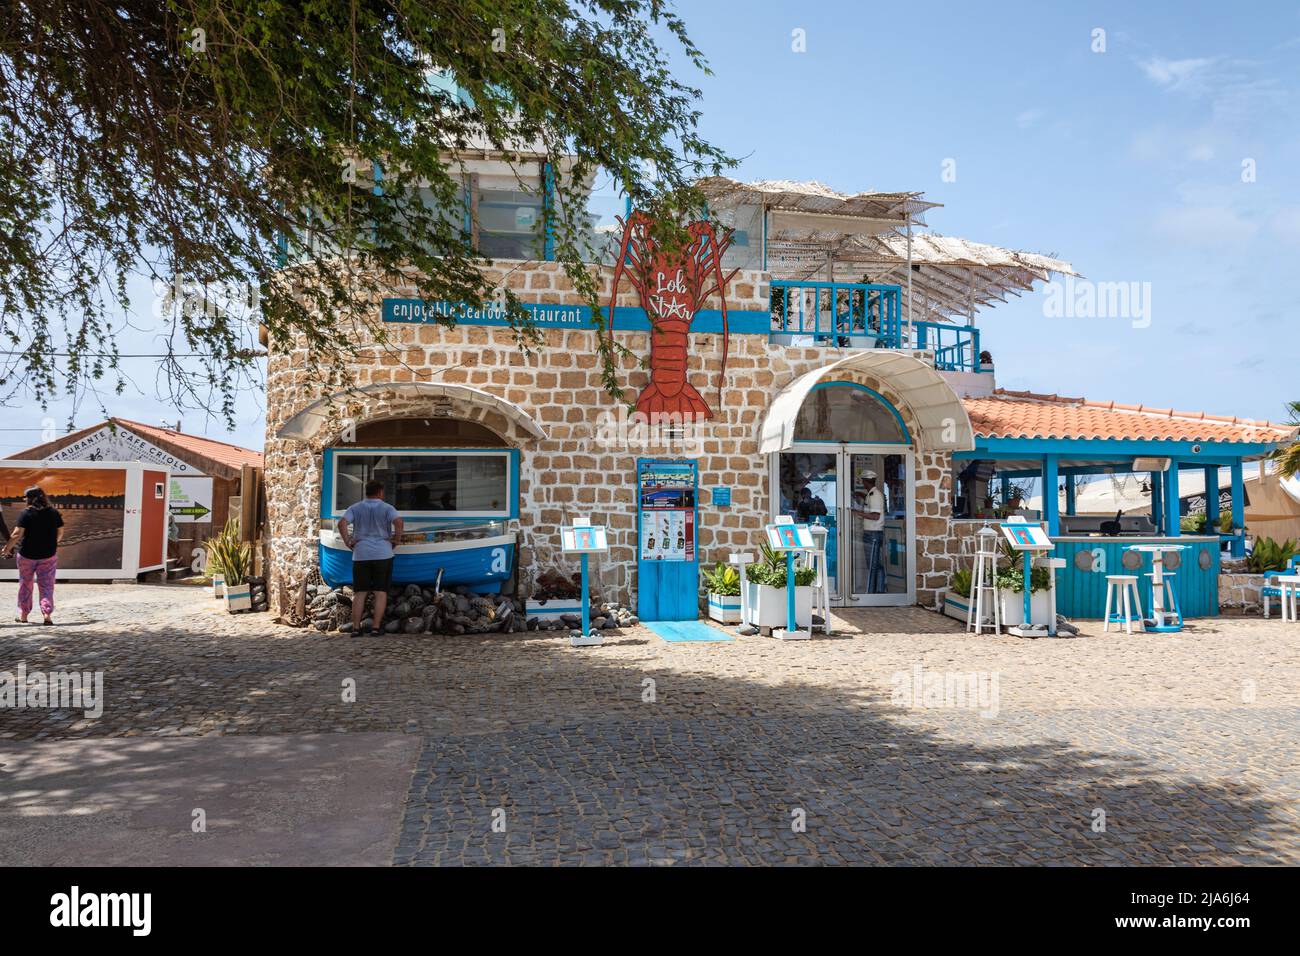 LobStar Seafood Restaurant en plein air sur la plage de Santa Maria, Sal Island, Cap-Vert, îles Cabo Verde, Afrique Banque D'Images